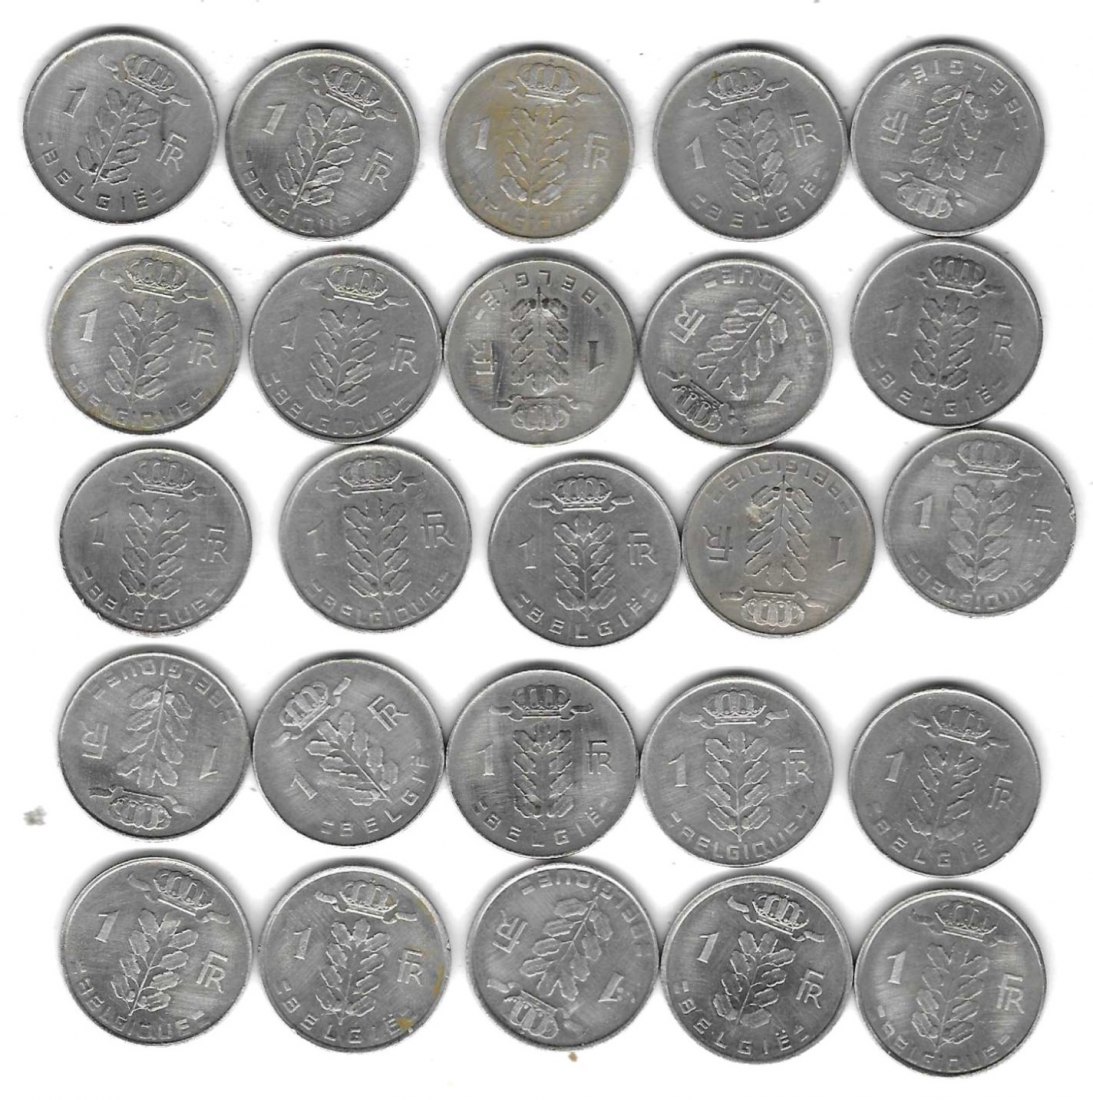  Belgien 25 x verschiedene 1 Franc, SS - Stempelglanz, Einzelaufstellung und Scan siehe unten   